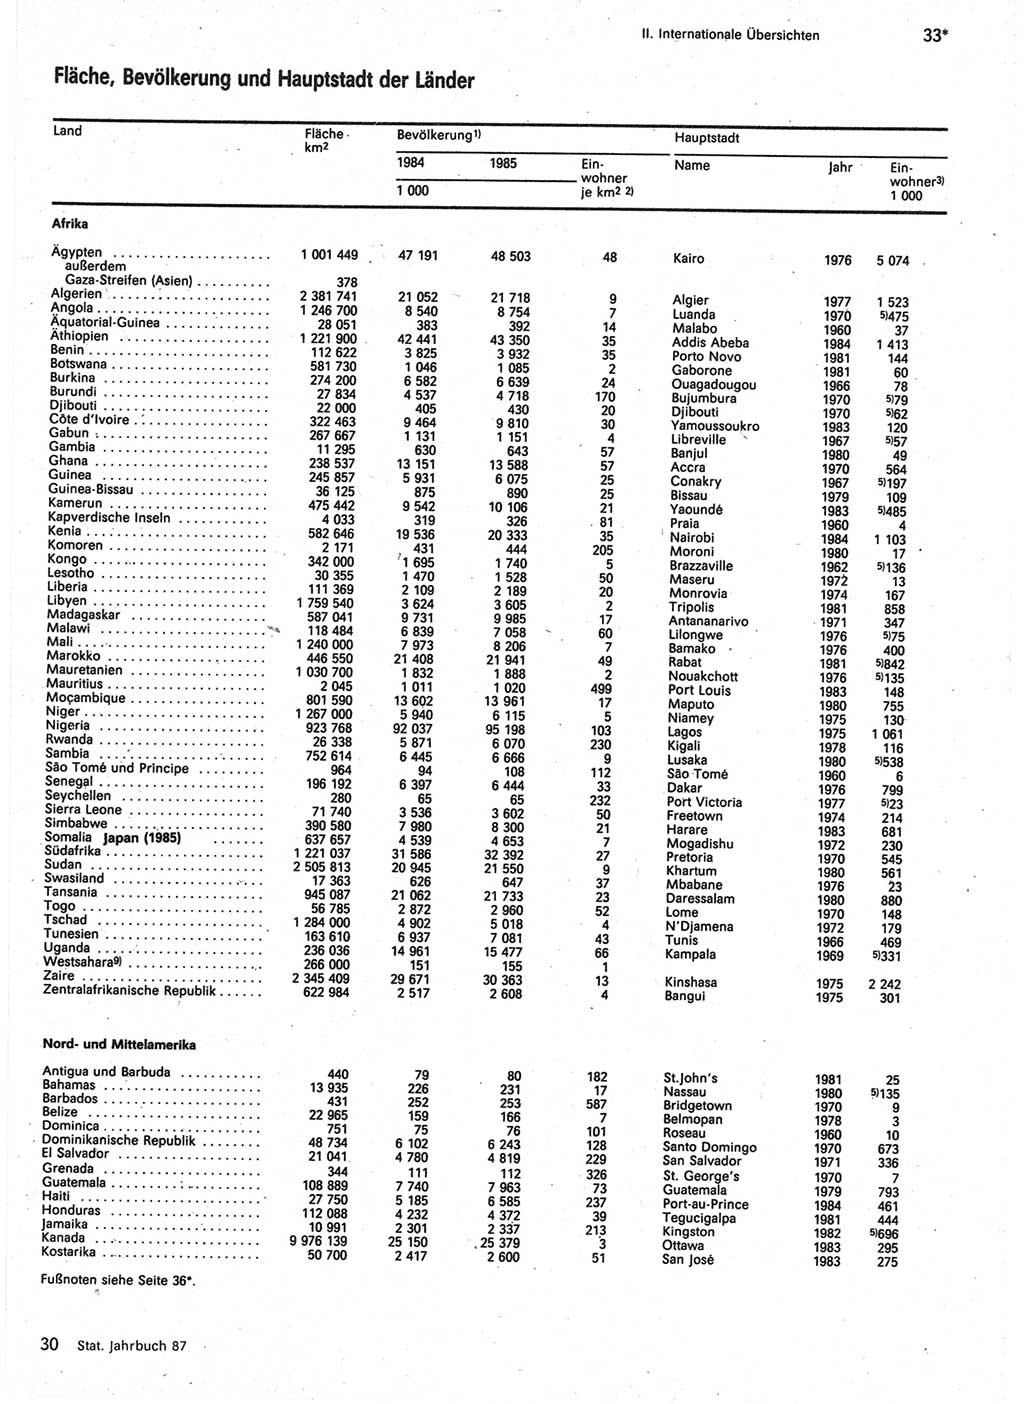 Statistisches Jahrbuch der Deutschen Demokratischen Republik (DDR) 1987, Seite 33 (Stat. Jb. DDR 1987, S. 33)